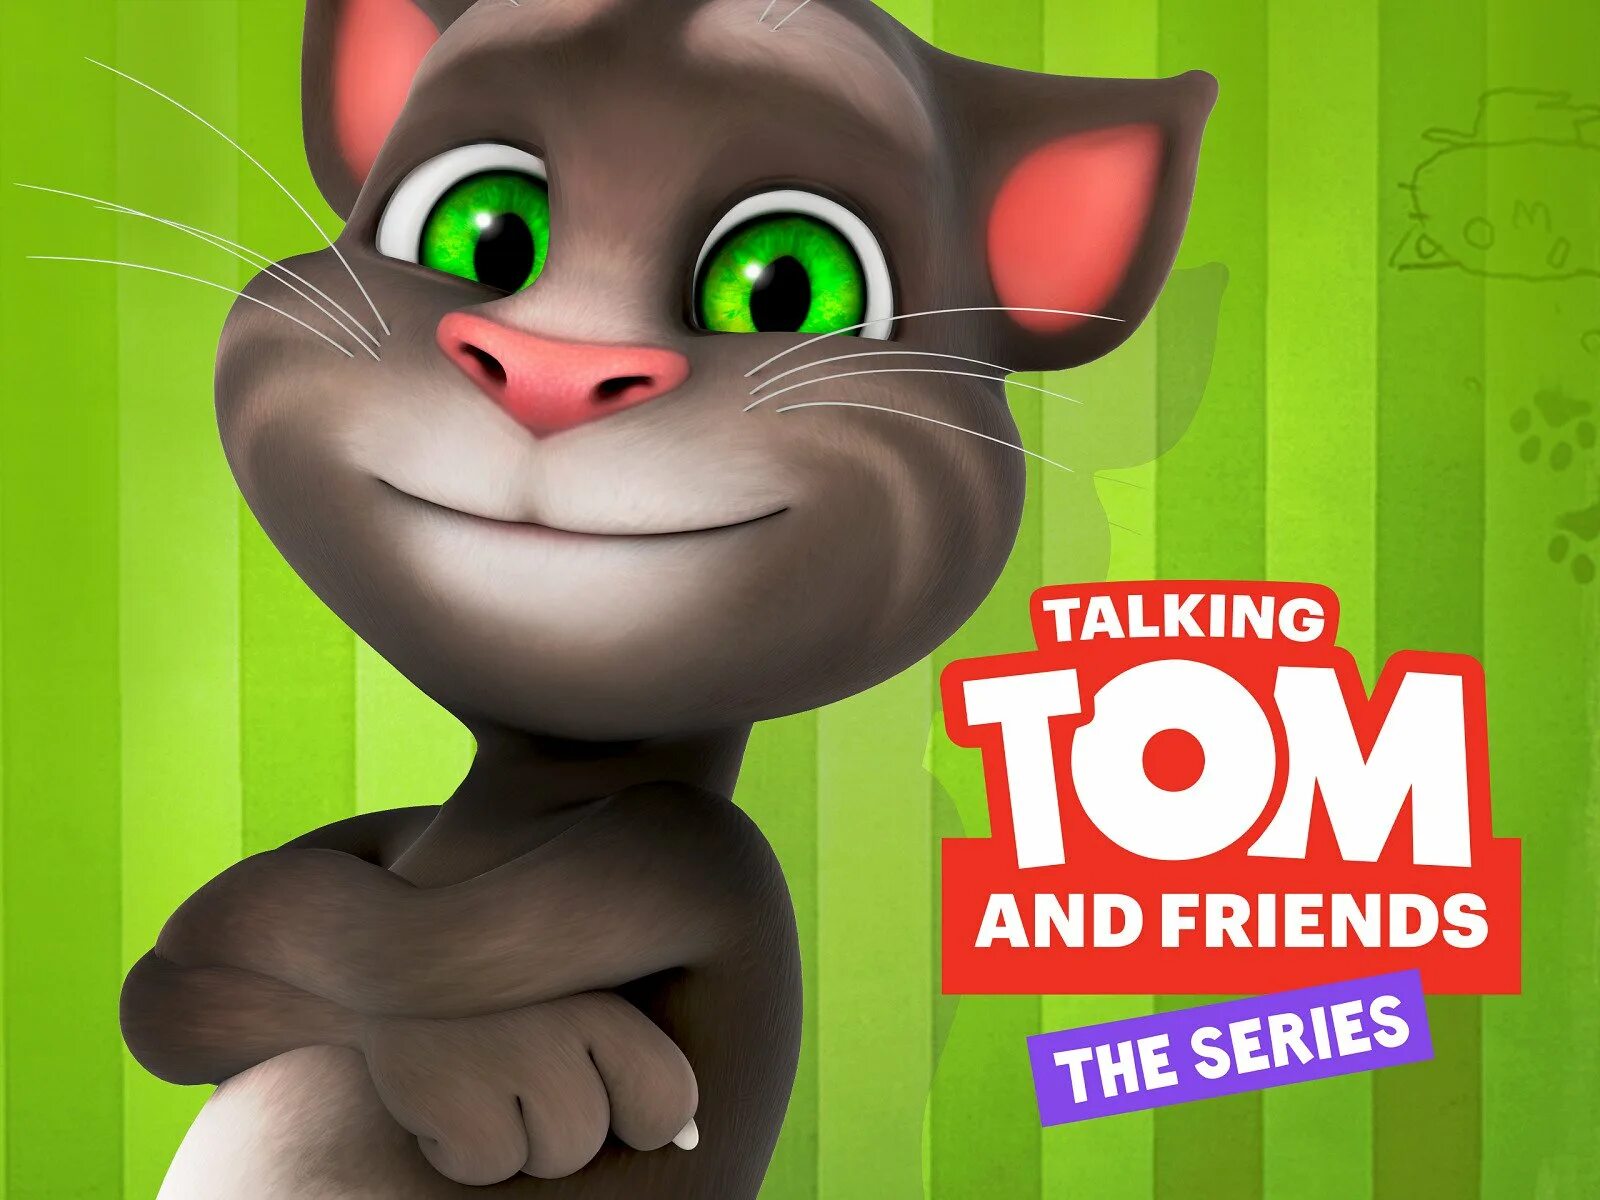 Talking tom com. Talking Tom. Том и его друзья. Talking Tom и его друзья. Talking Tom Cat.